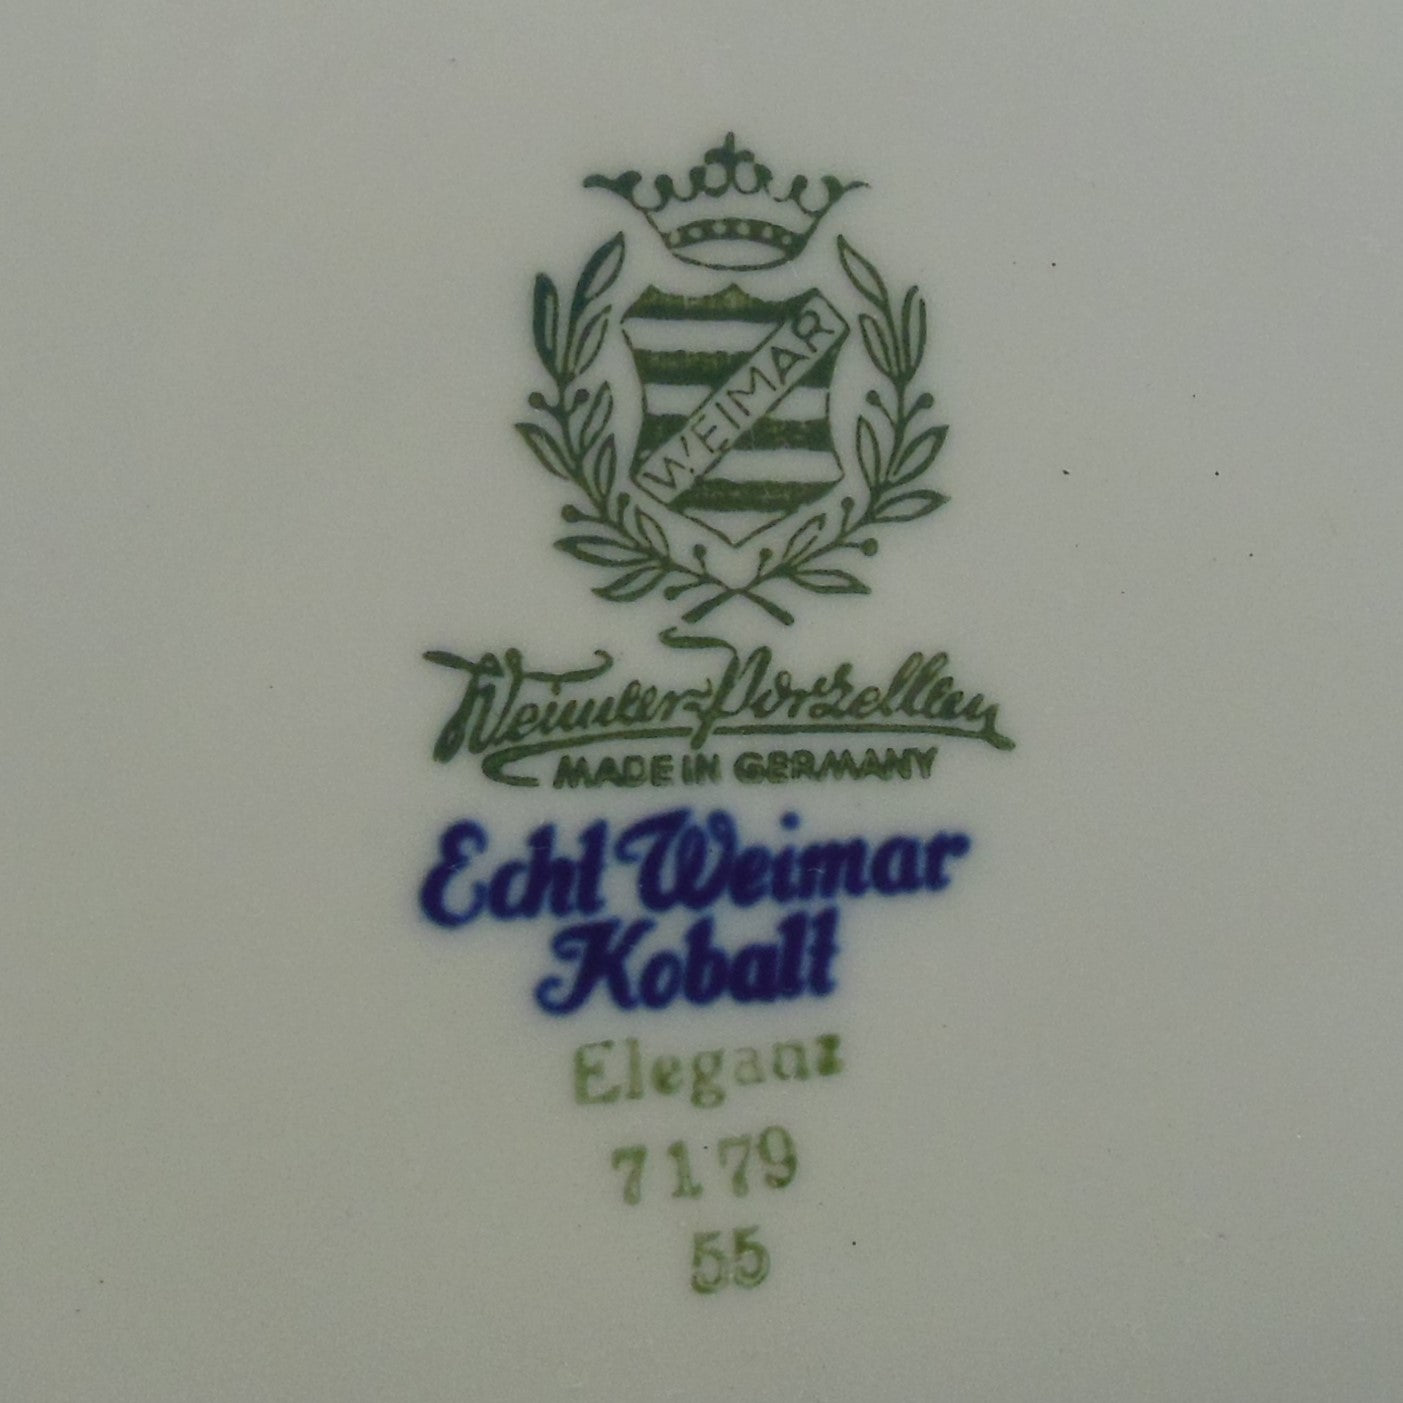 Weimar Germany Porcelain Echt Kobalt Eleganze Gold Soup Tureen Scroll Asterisk maker mark stamp